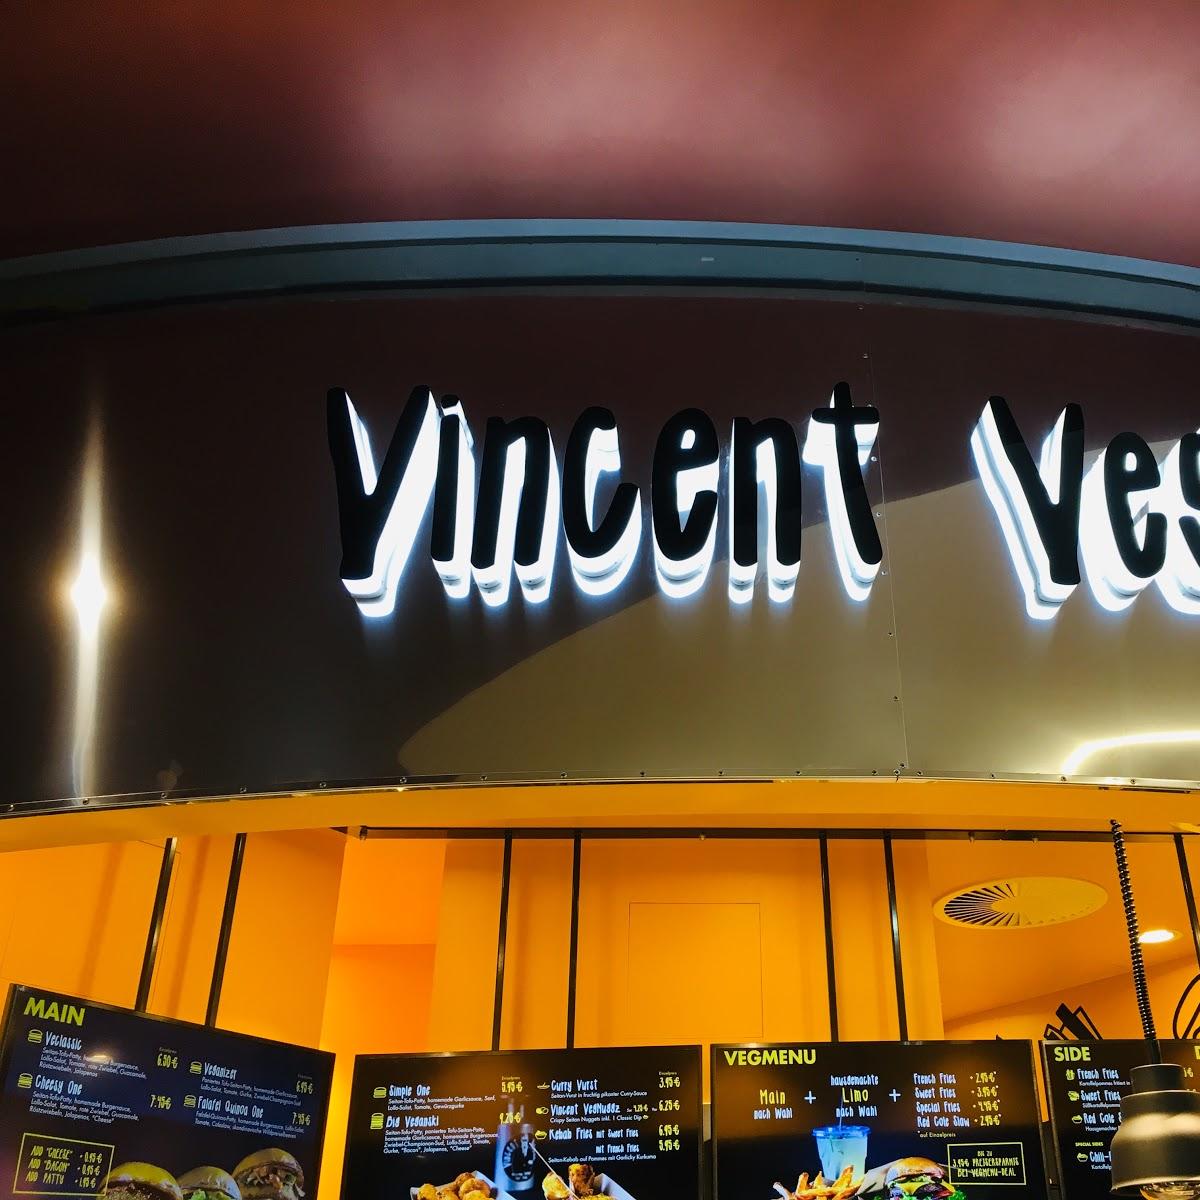 Restaurant "Vincent Vegan" in Berlin